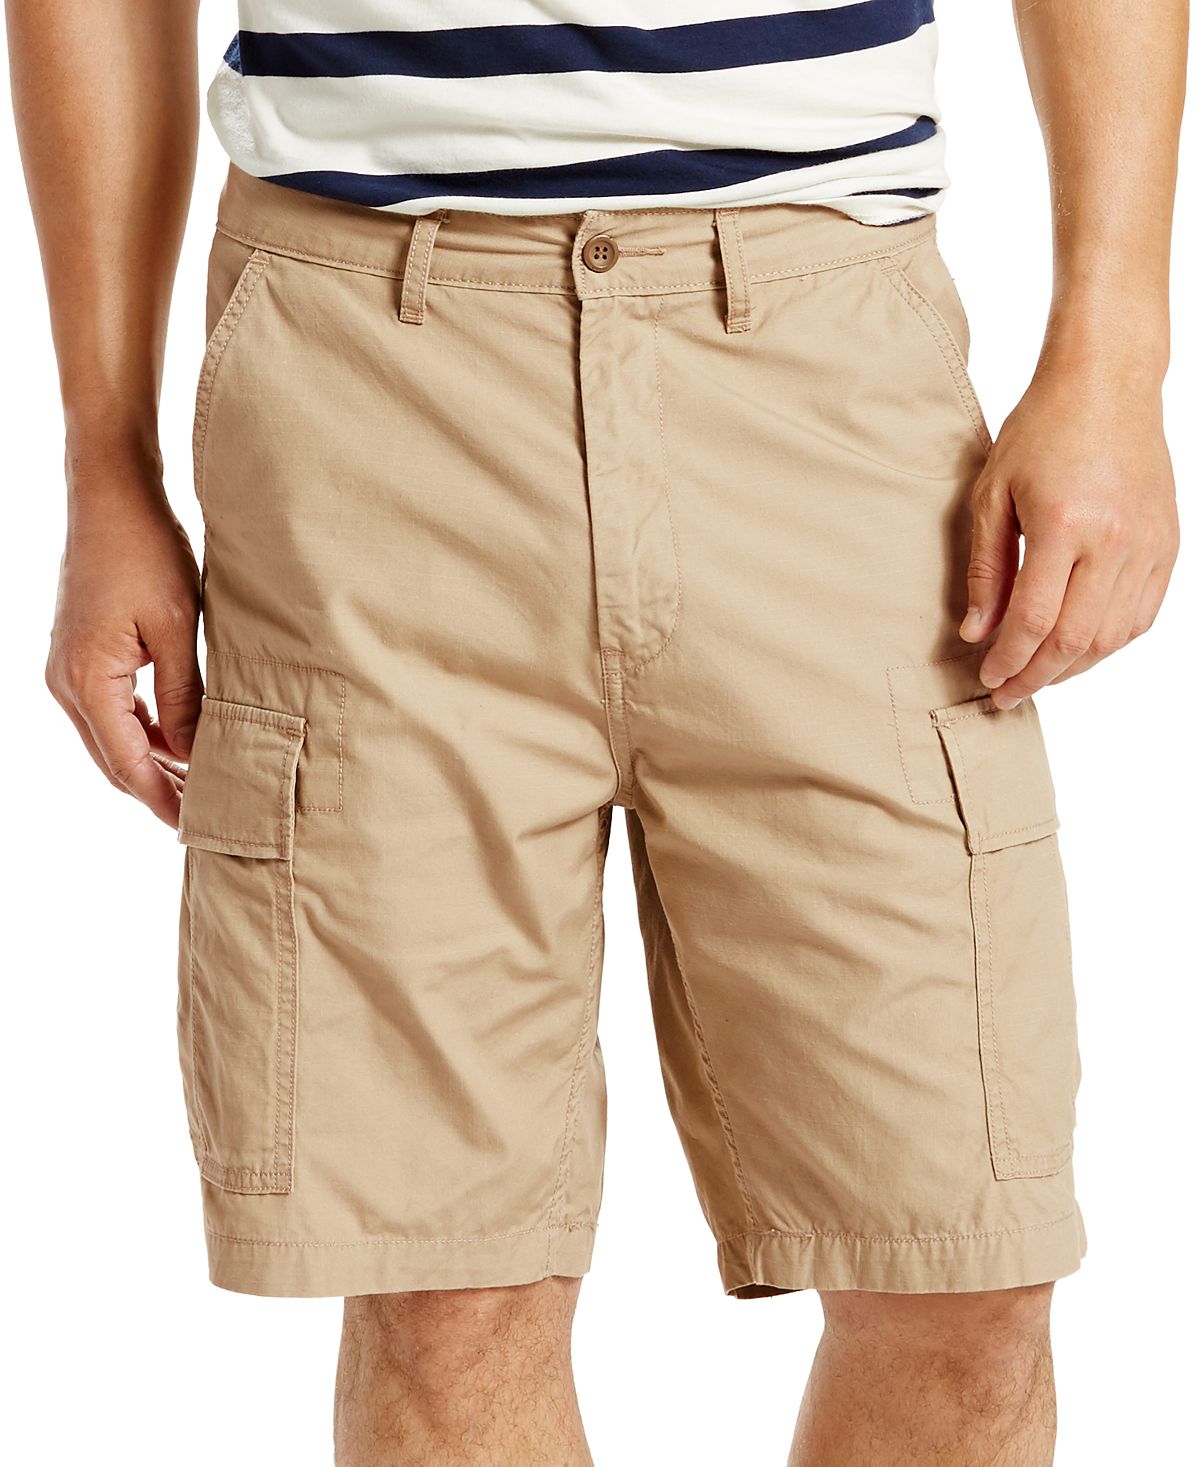 Мужские шорты-карго свободного покроя из неэластичного материала шириной 9,5 дюйма Levi's